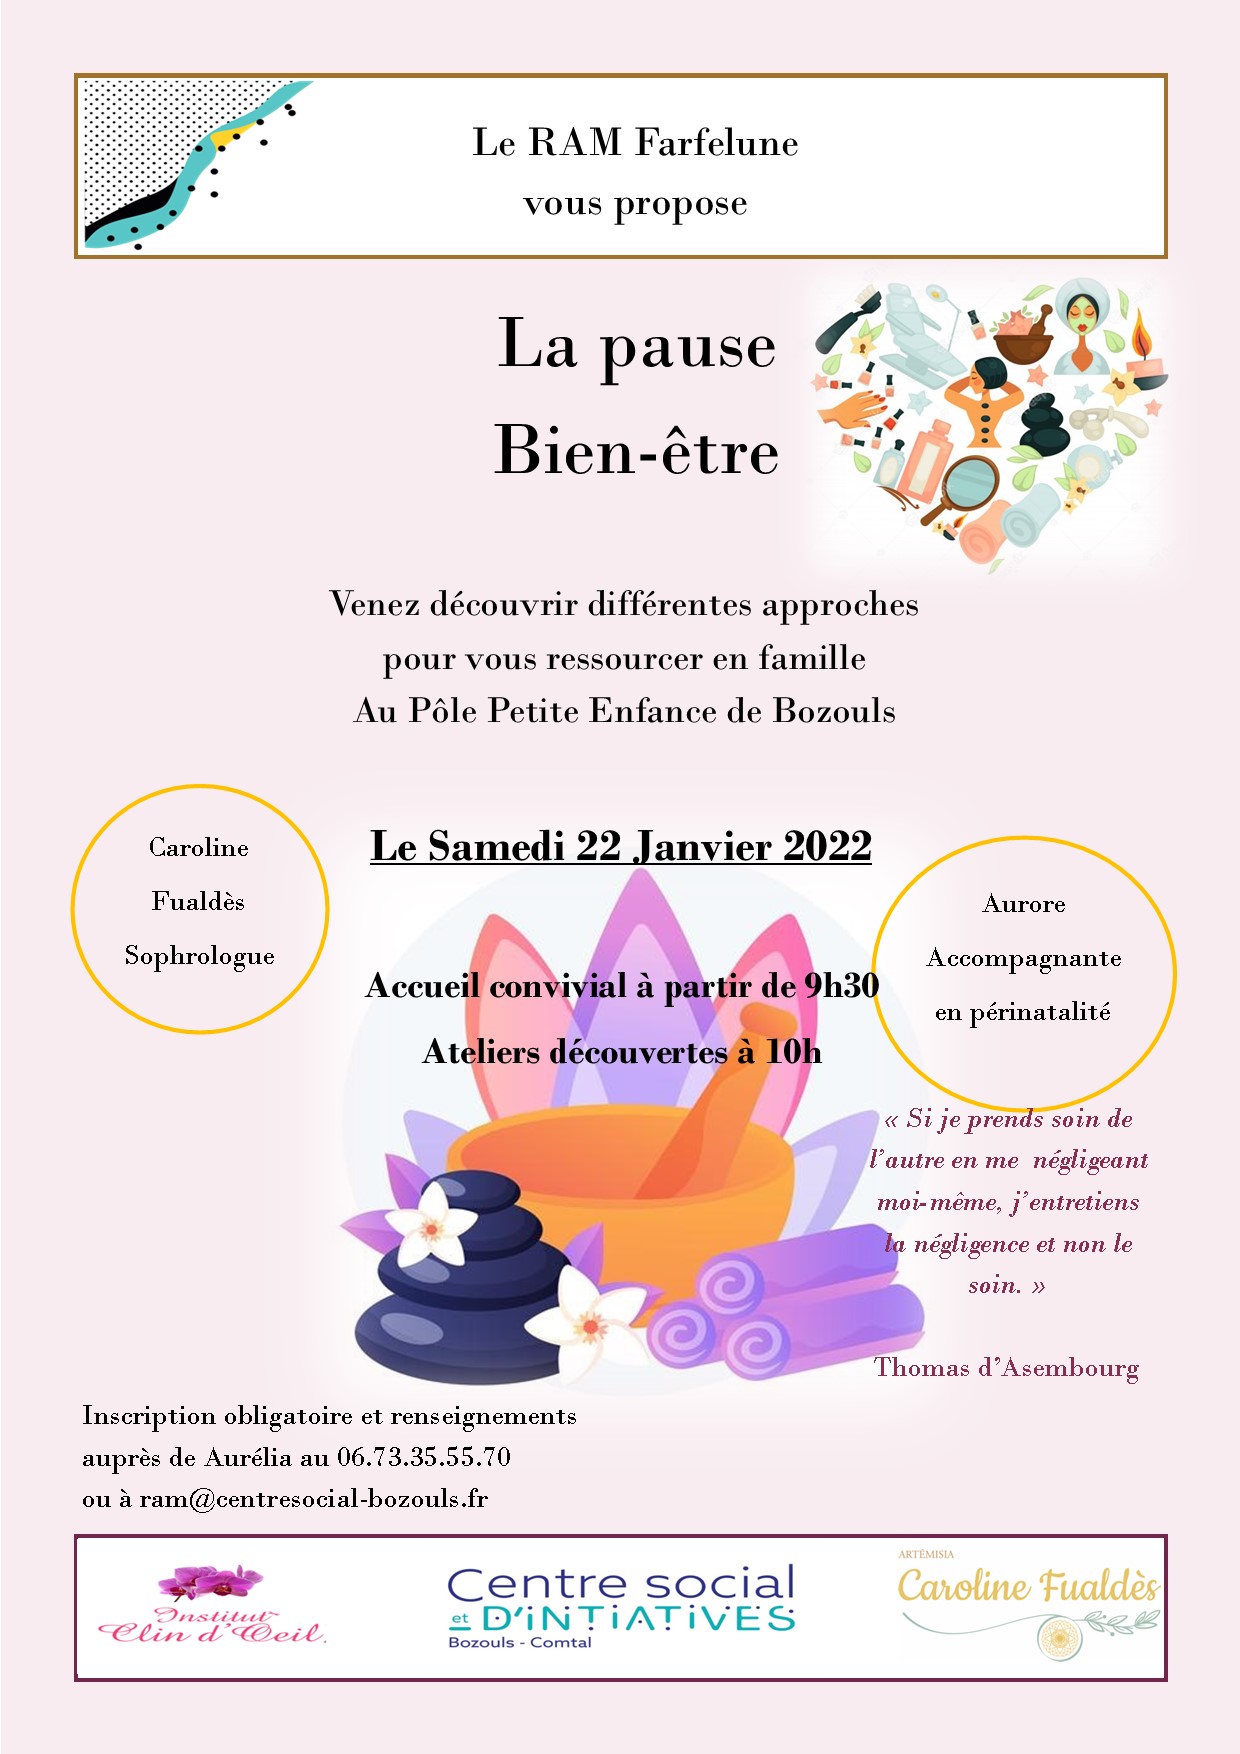 Pause bien-être au RAM, le Relais Assistante Maternelle de Bozouls (Aveyron) : Le samedi 22 janvier de 9h30 à 11h45.